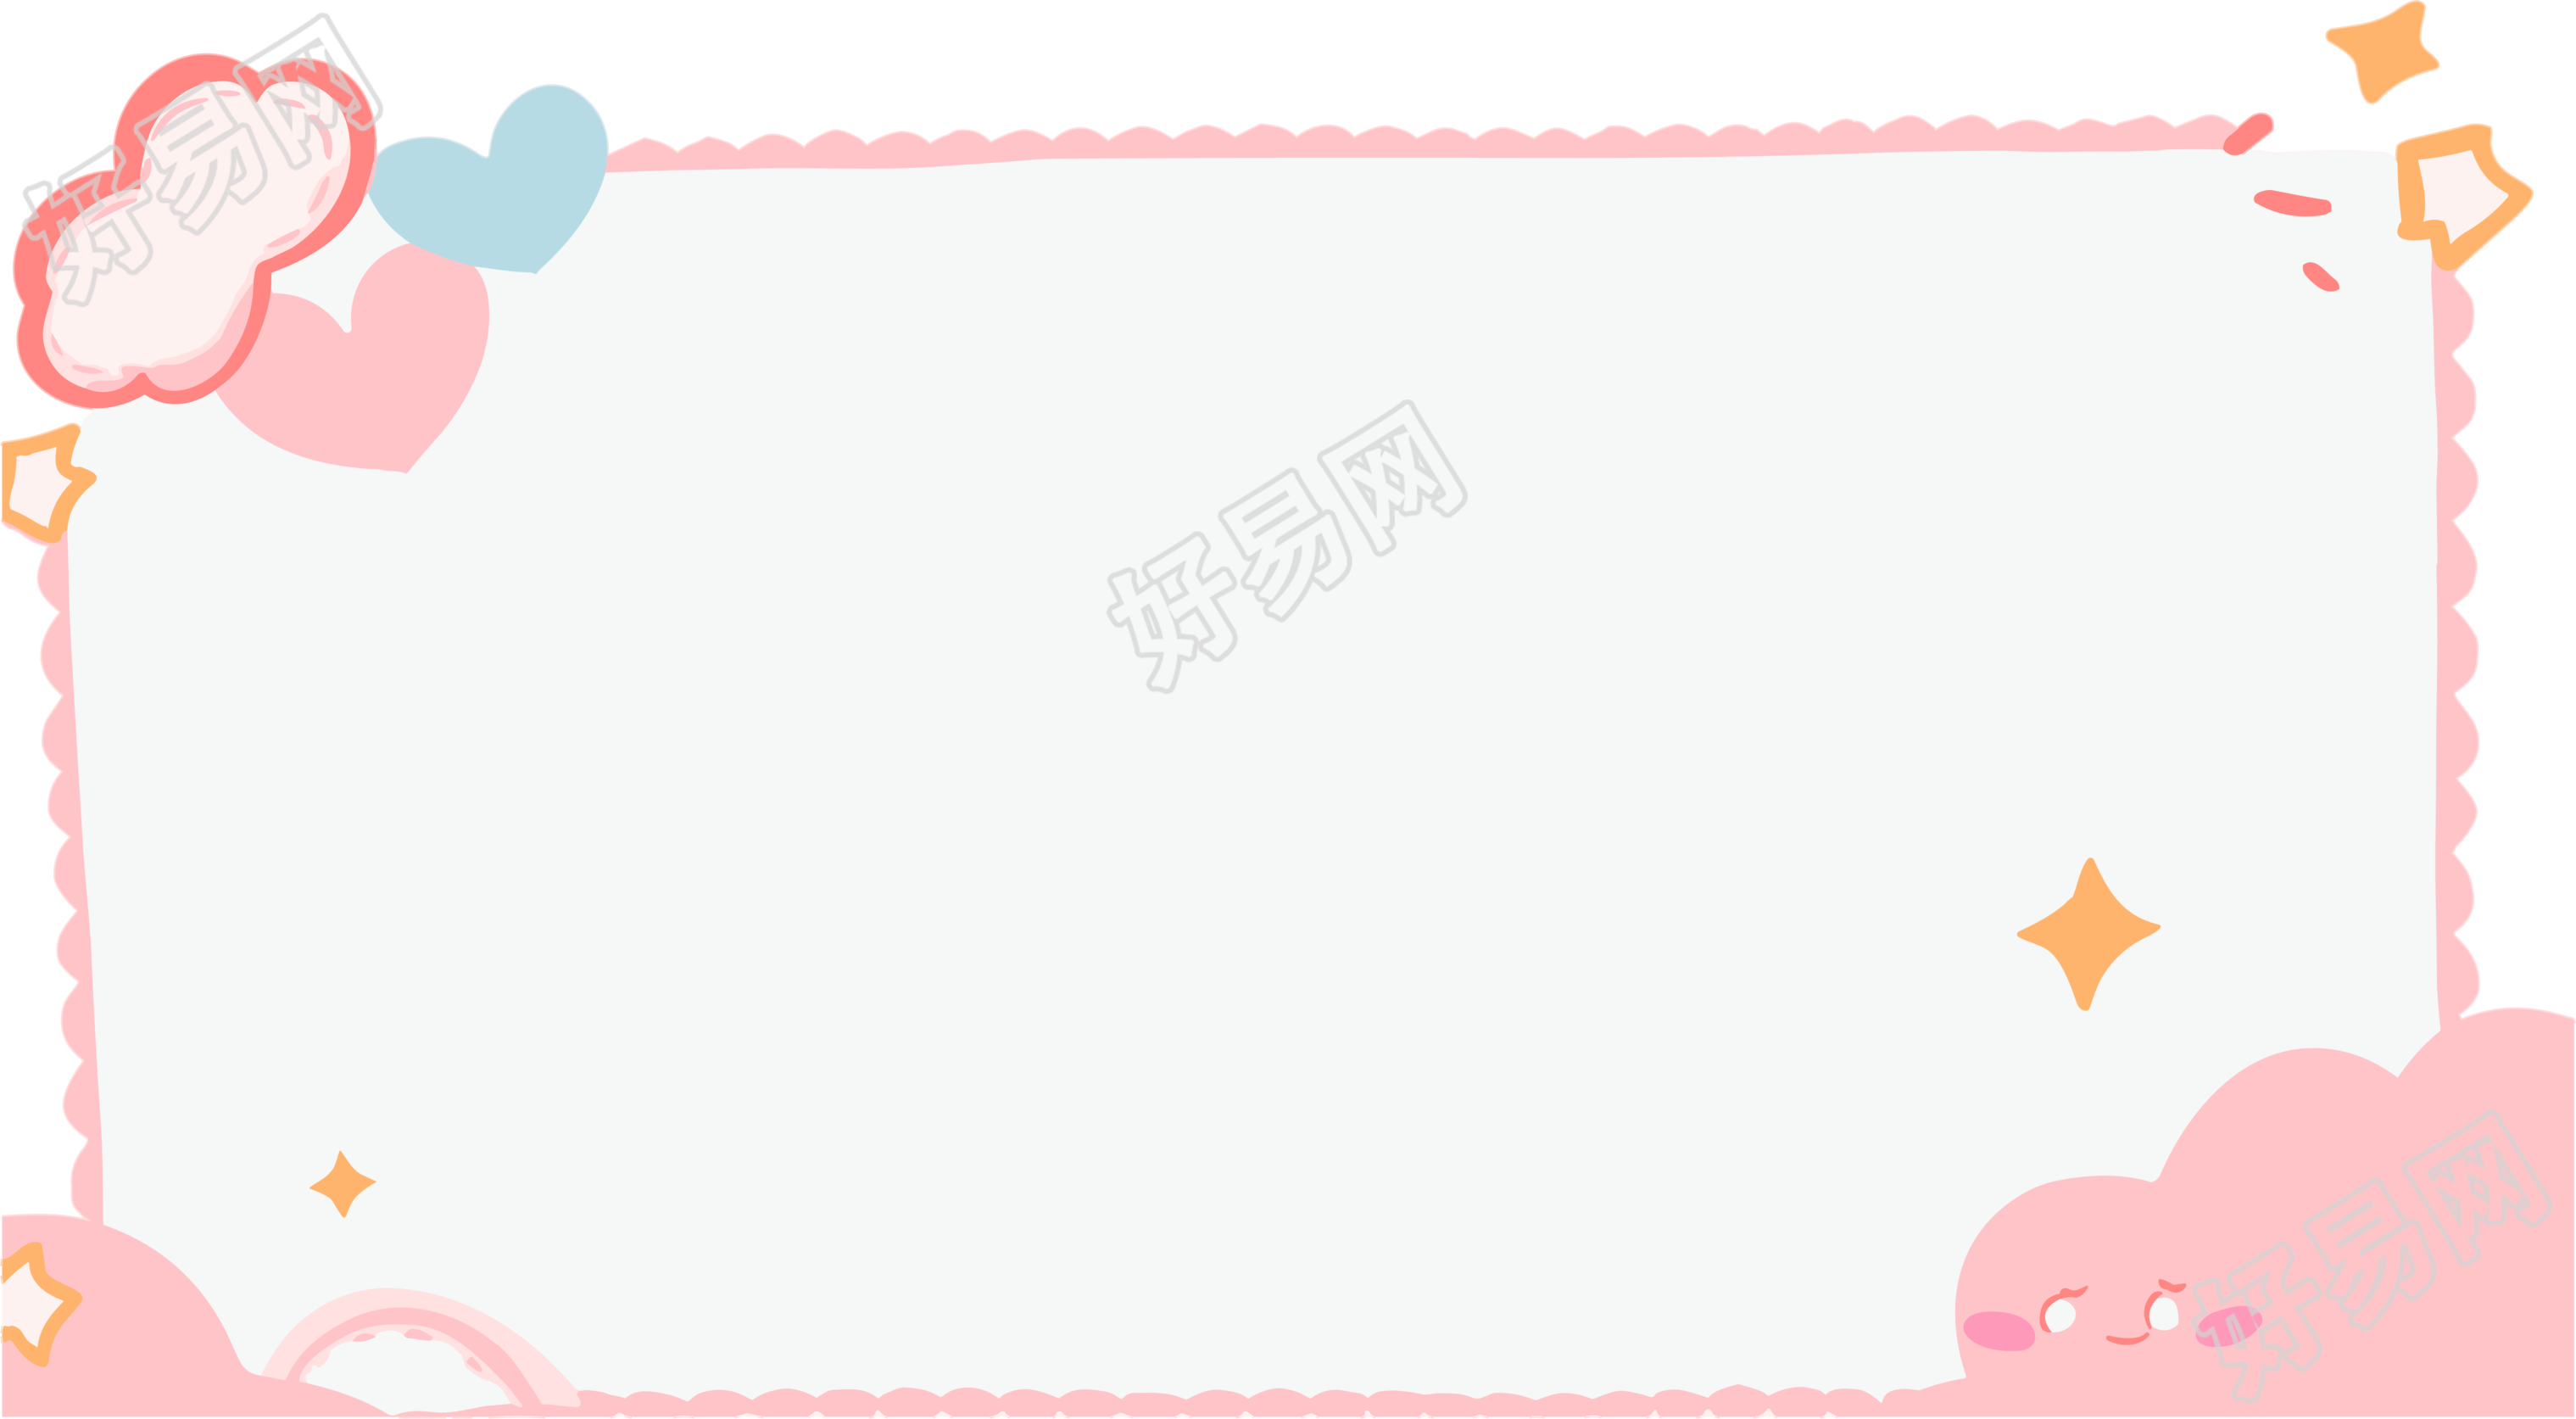 粉色可爱卡通边框透明背景素材